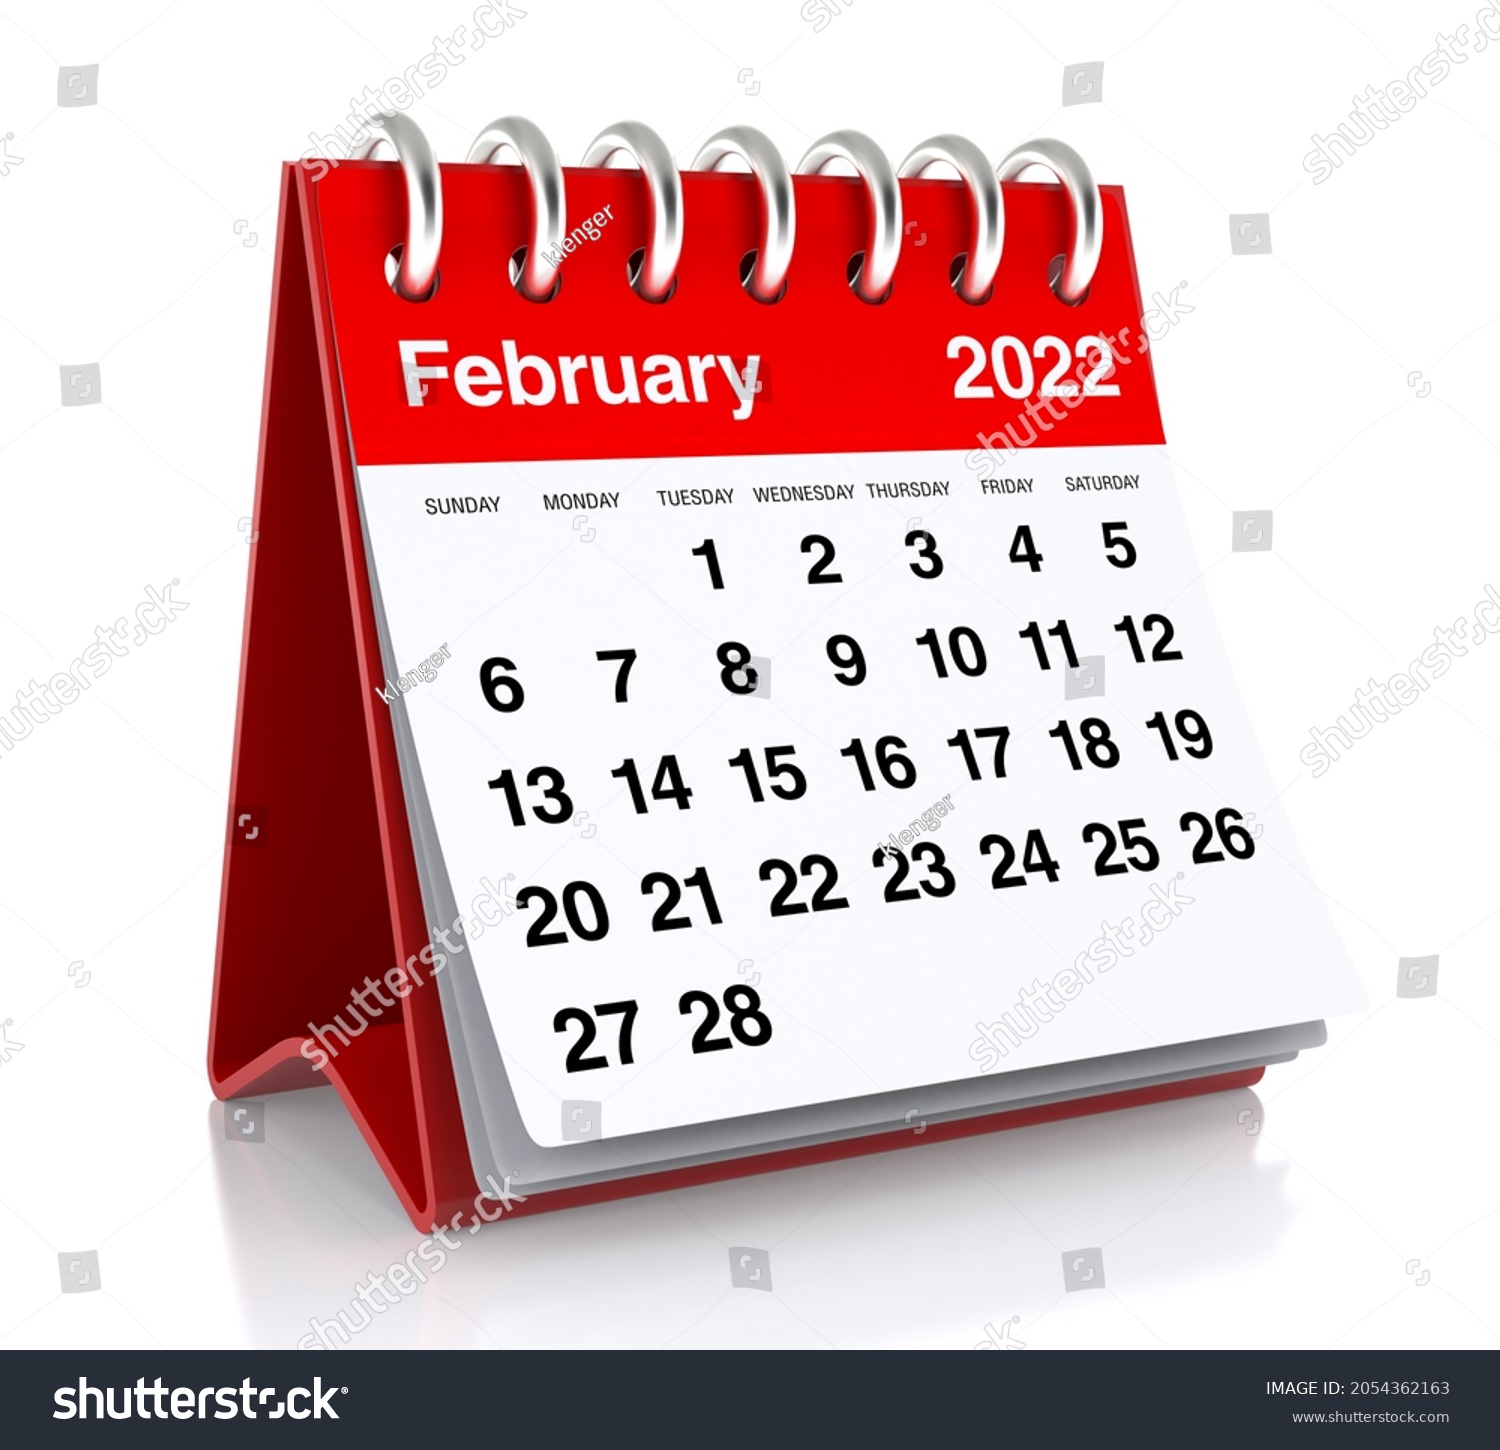 27 february 2022